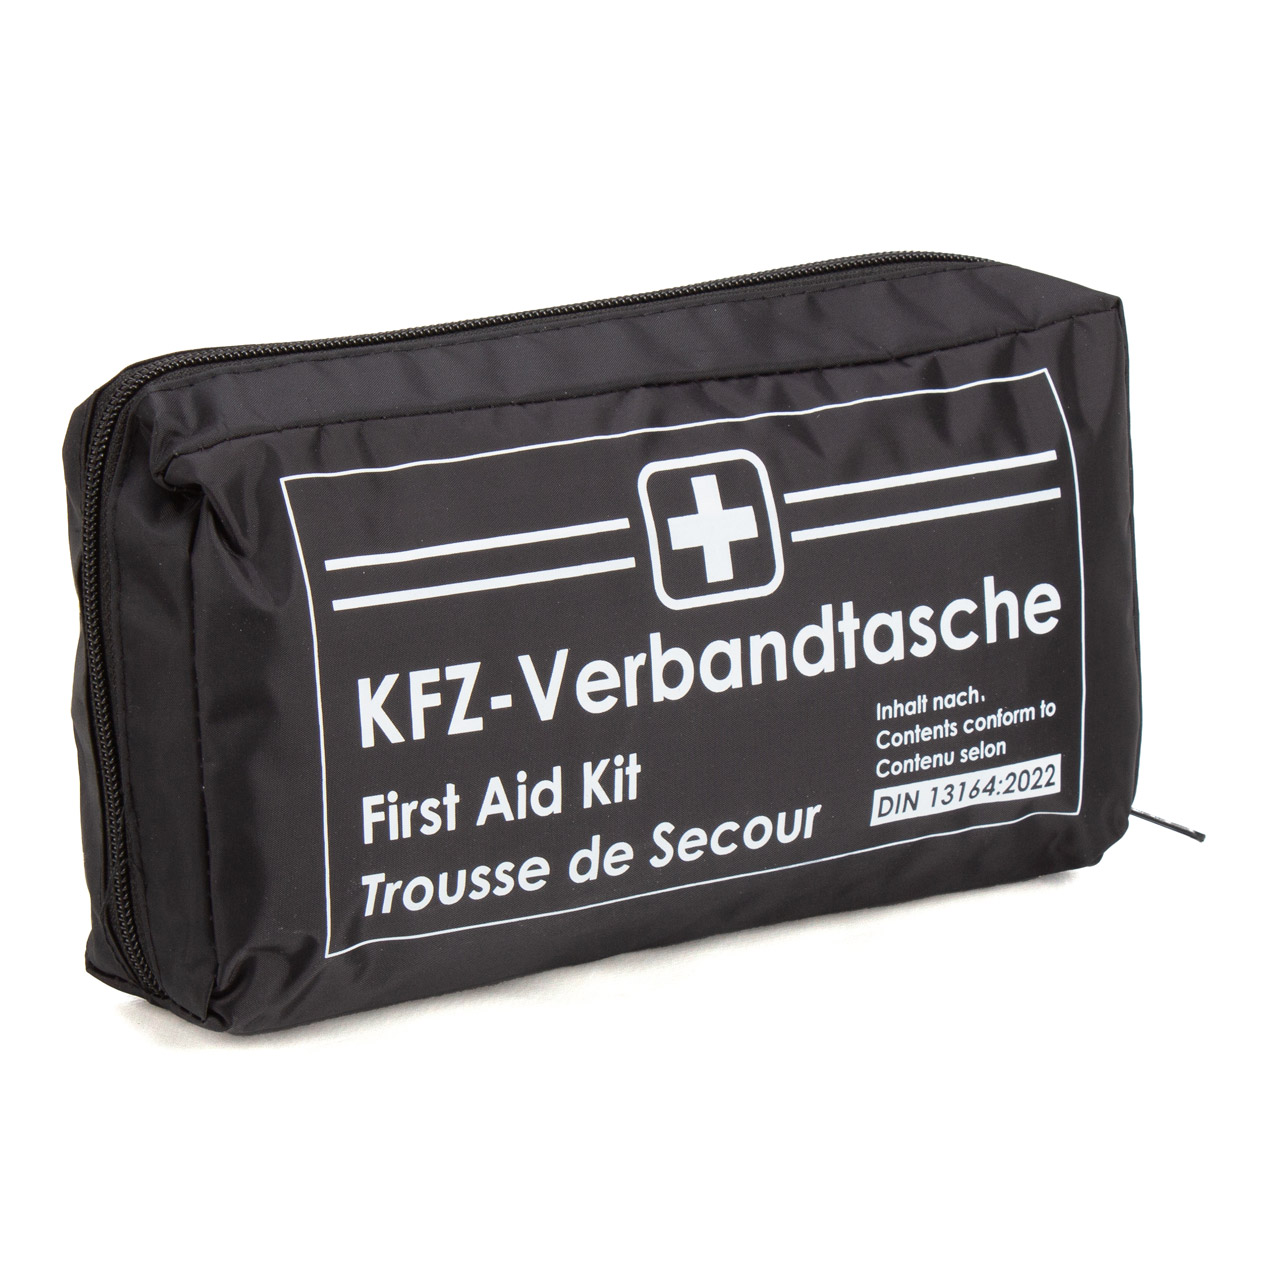 Filmer Auto Verbandtasche + Erste Hilfe + KFZ+PKW Verbandsbox –